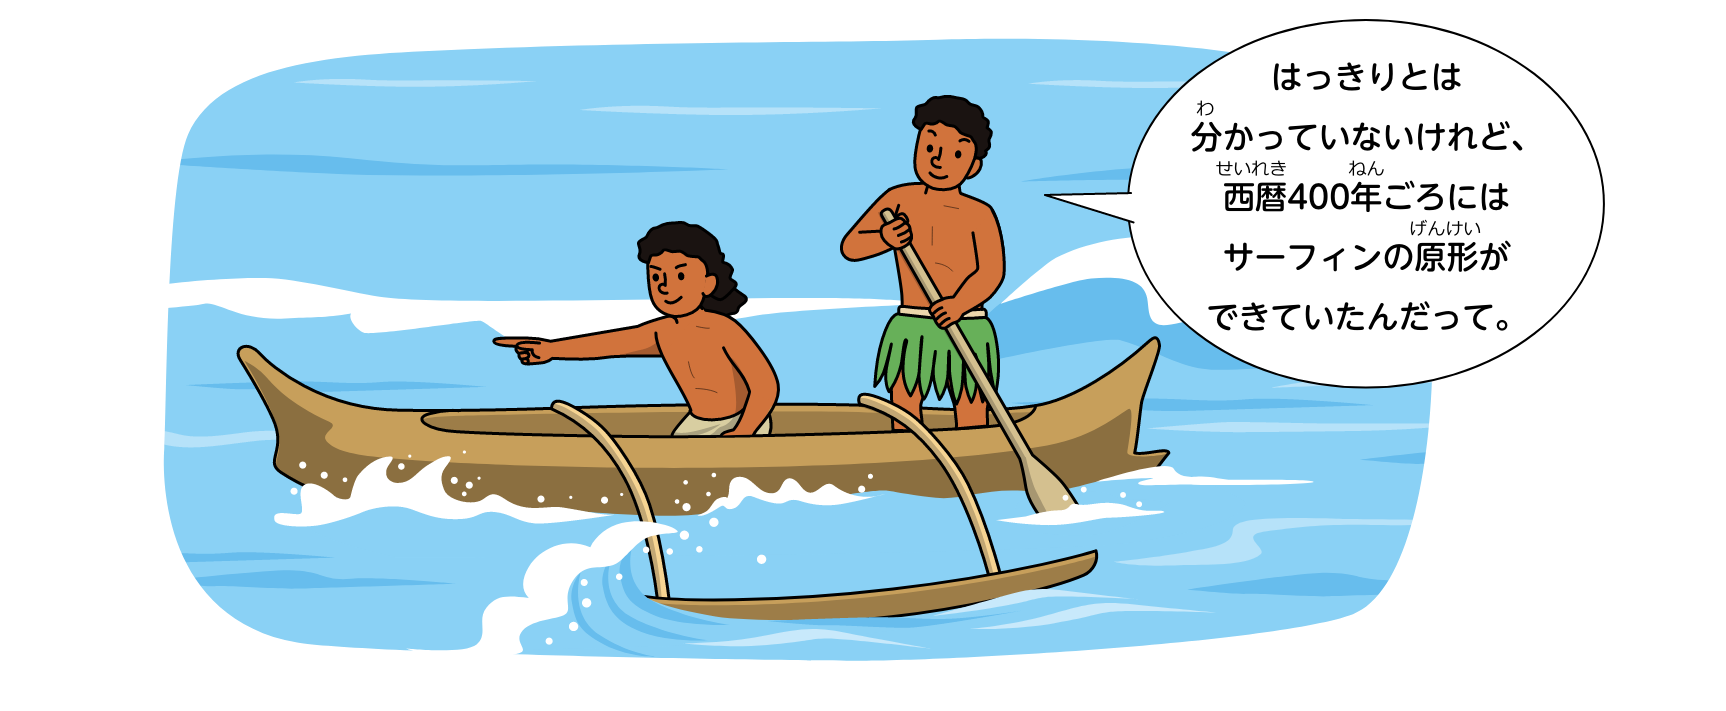 はっきりとは分かっていないけれど、西暦400年ごろにはサーフィンの原形ができていたんだって。